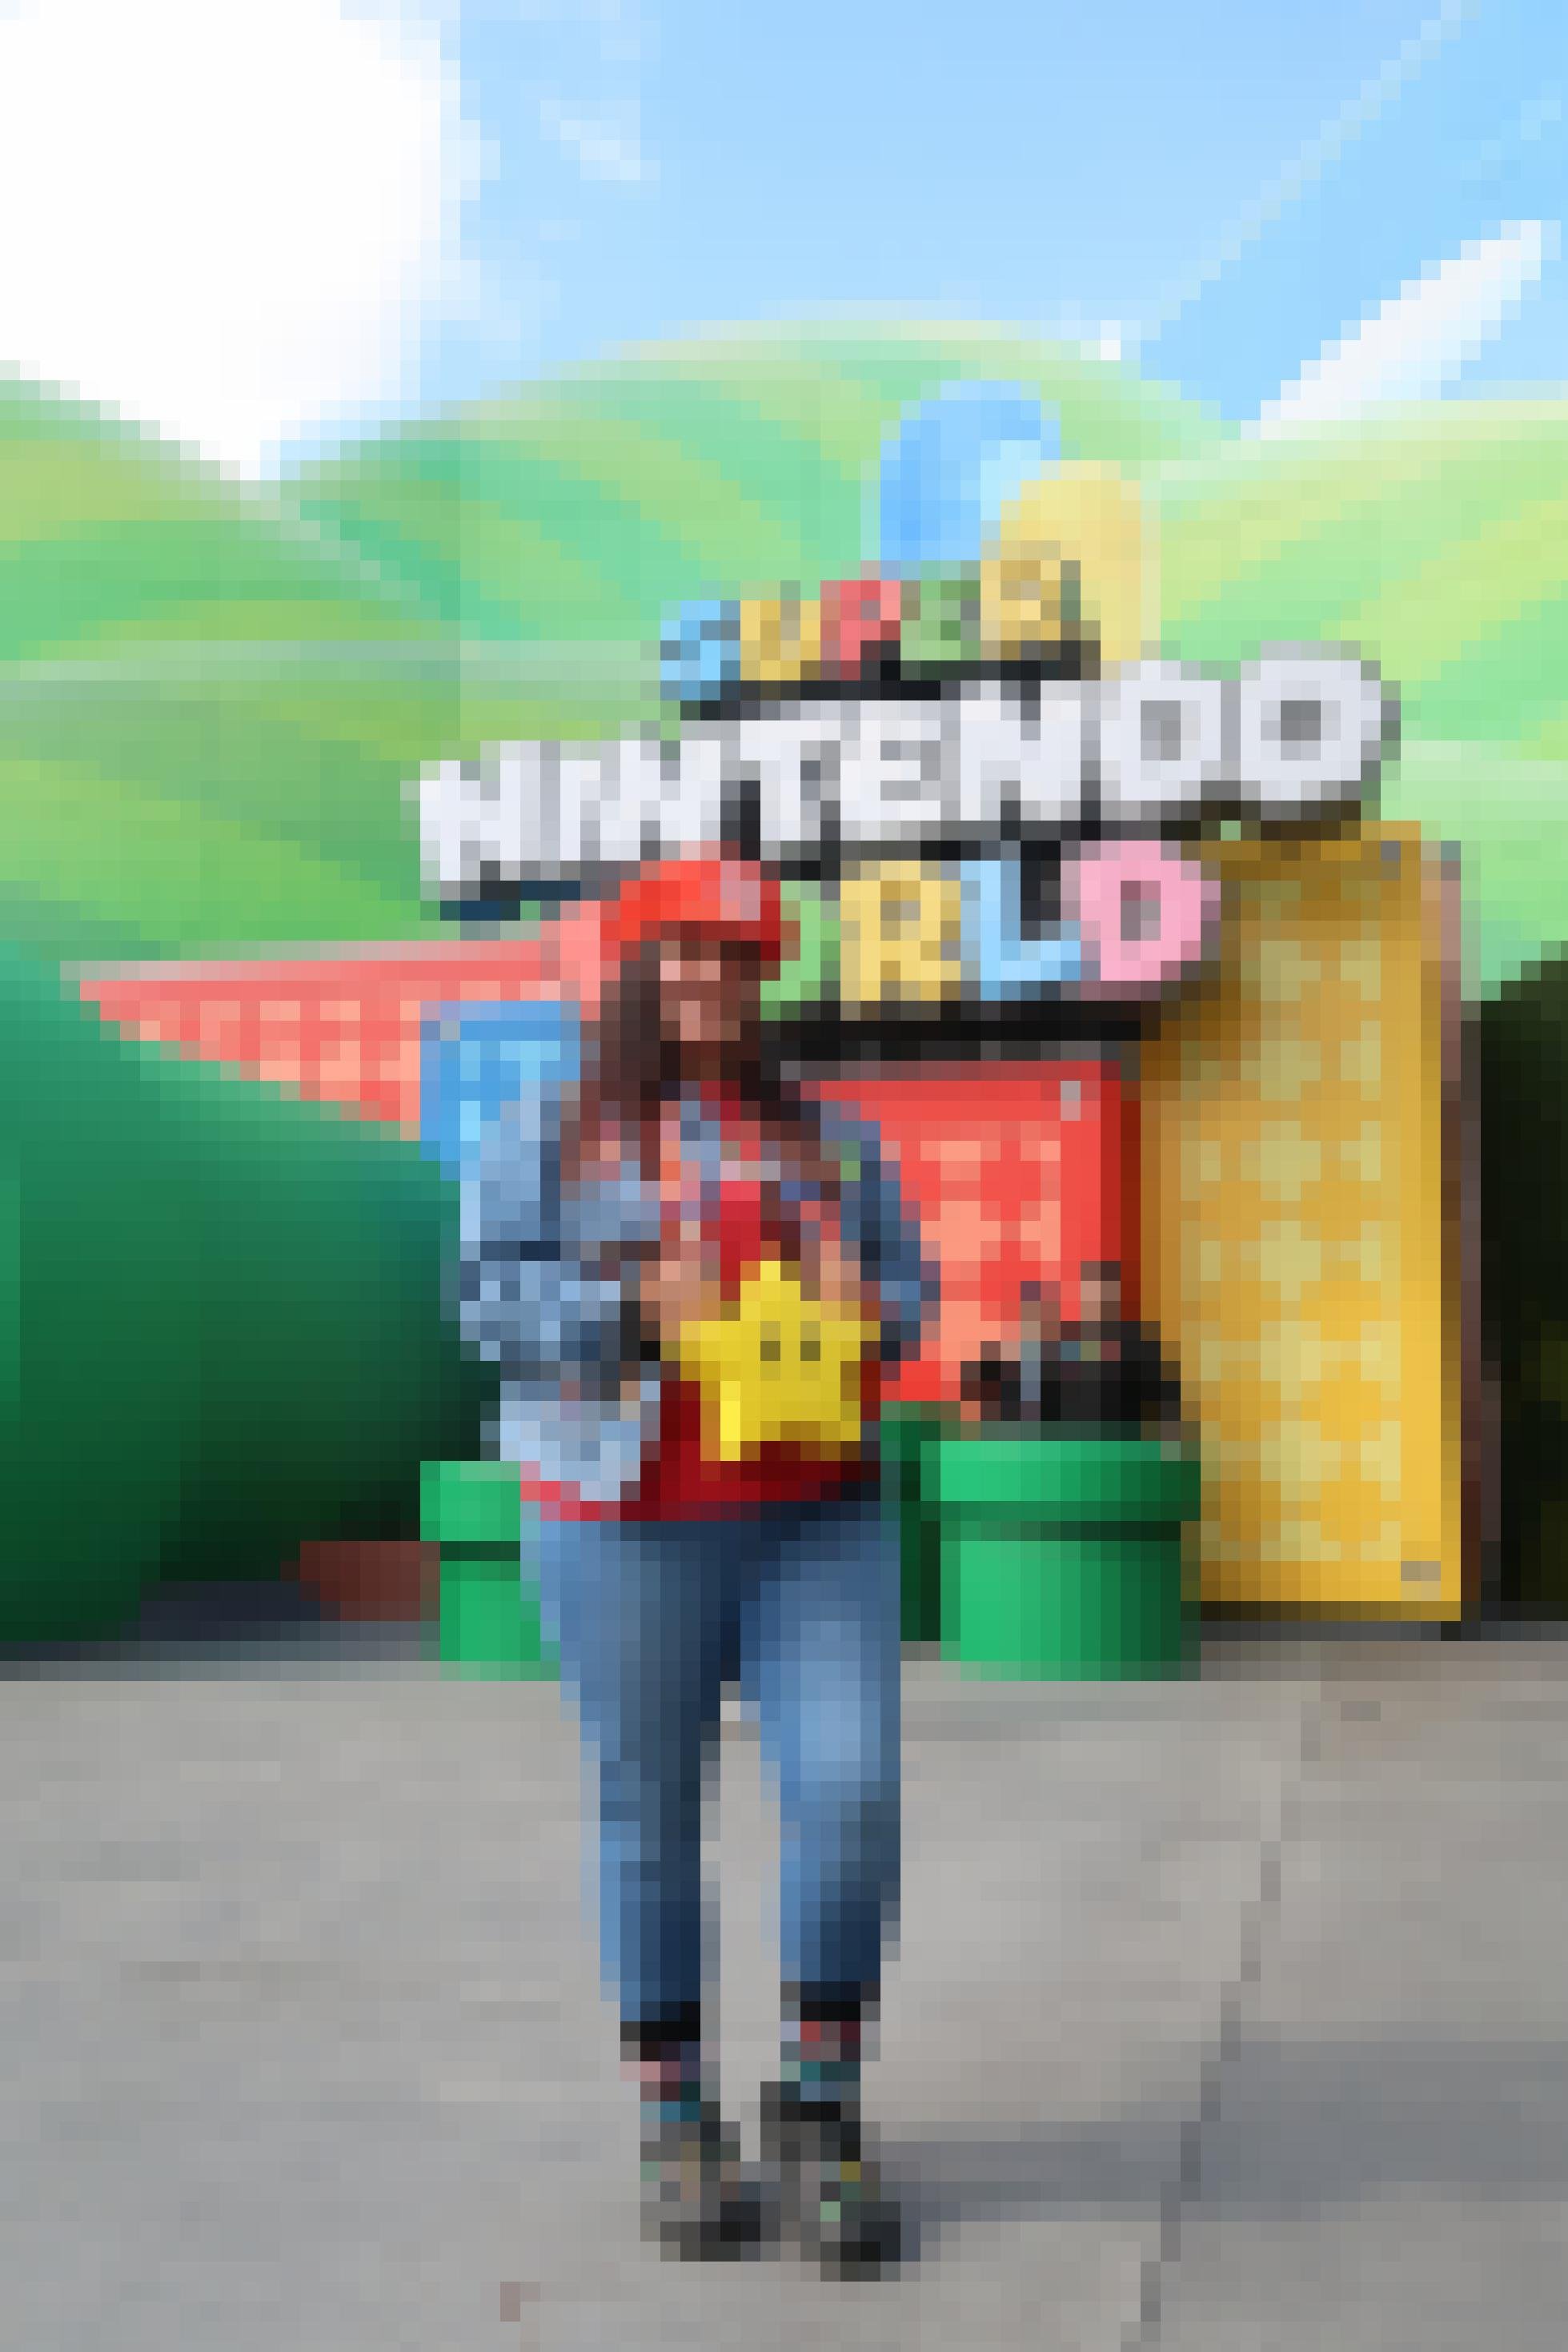 Eine junge Frau trägt Fan-Artikel der Super-Nintendo-World am Körper